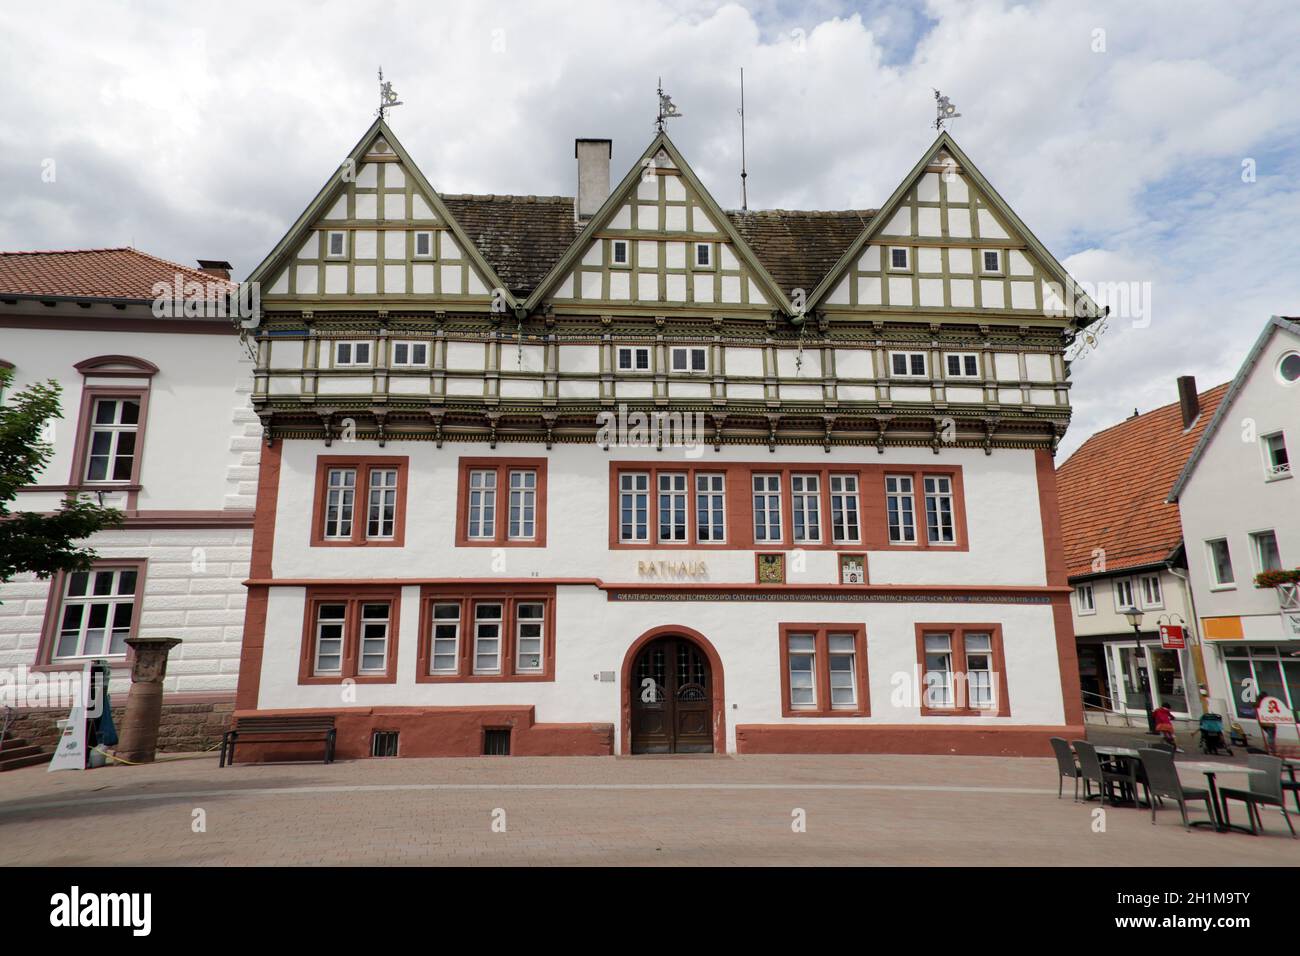 historisches Rathaus aus dem 16. Jahrhundert am Marktplatz, Blomberg, Nordrhein-Westfalen, Allemagne Banque D'Images